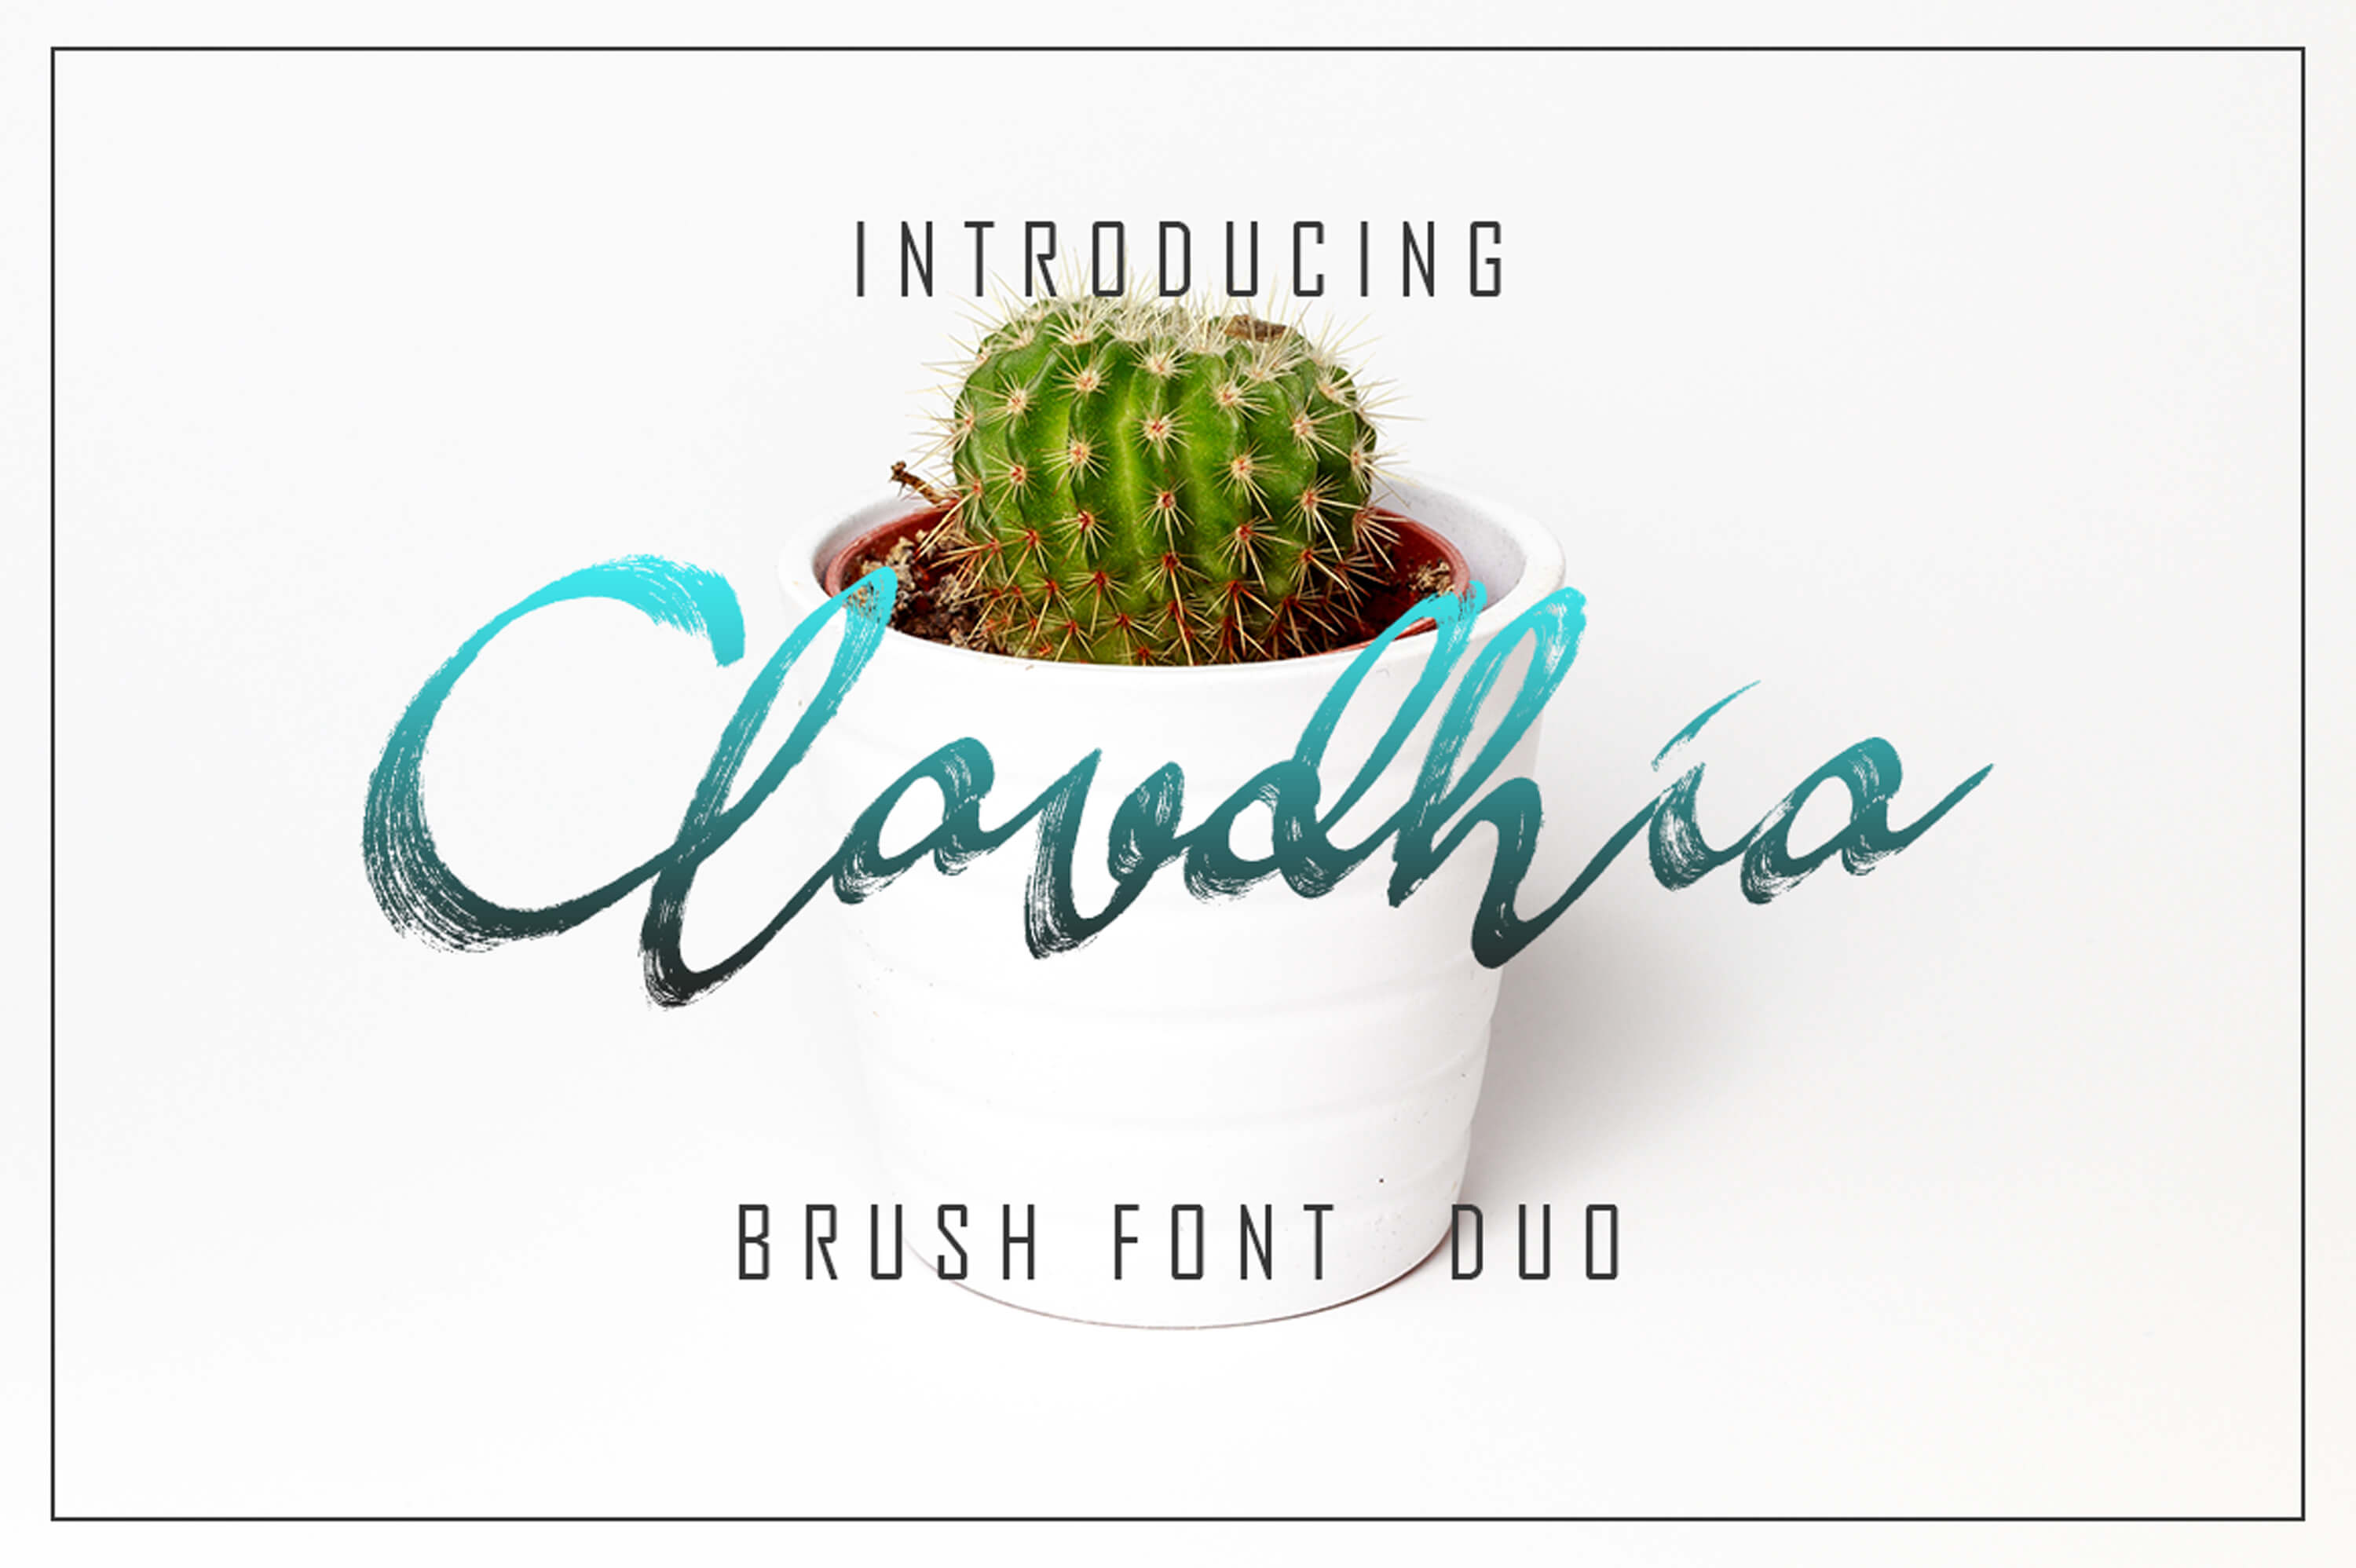 claudhi and jhelio unique playful font pinterest image.